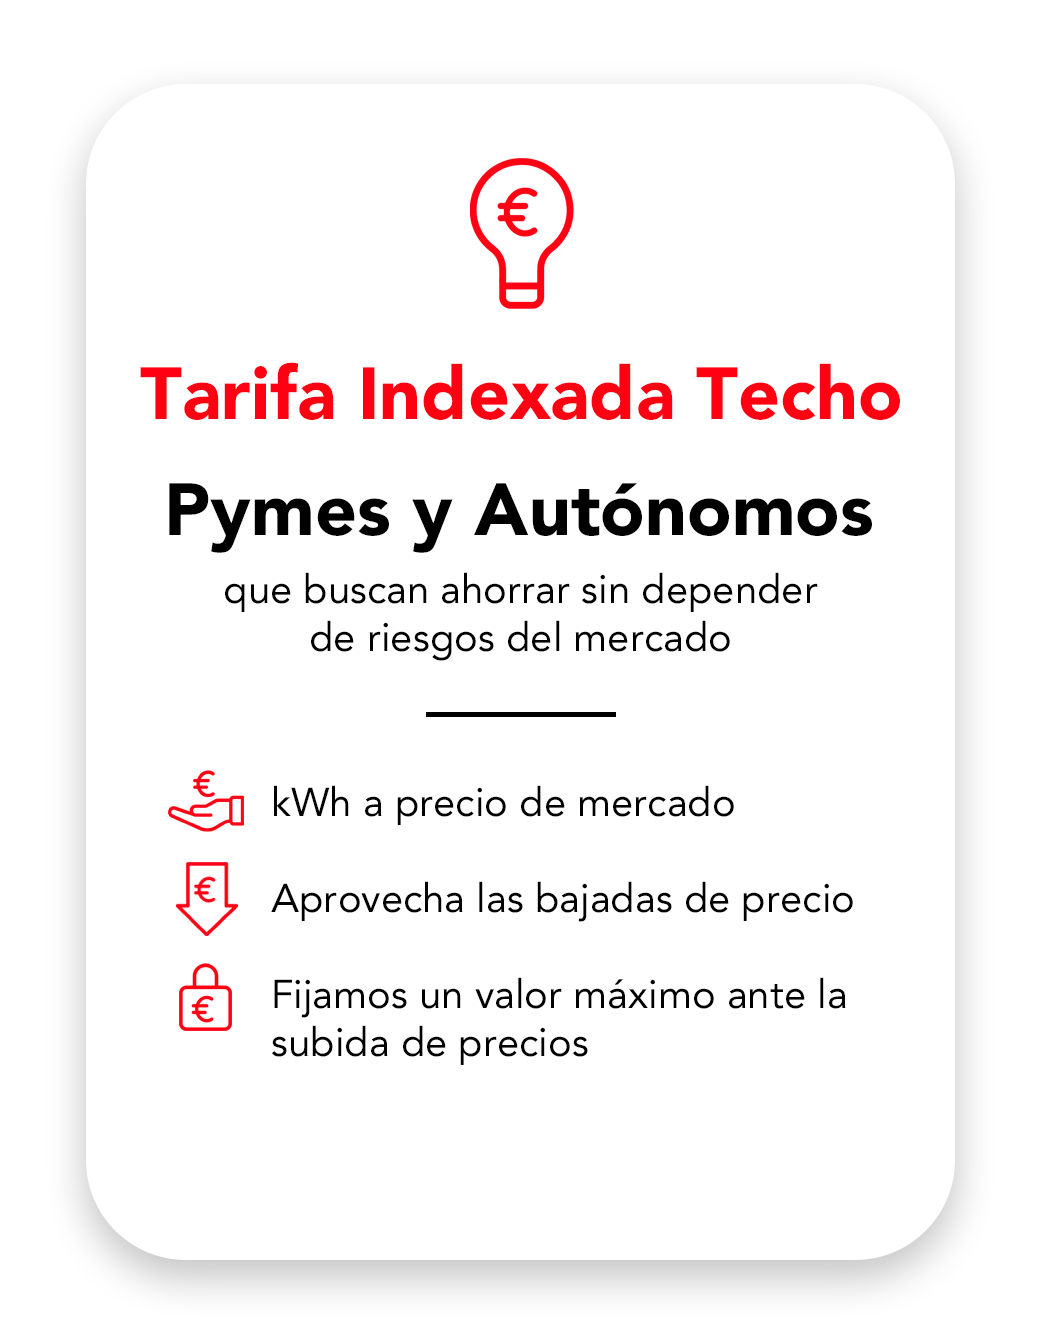 Tarifa Indexada Techo